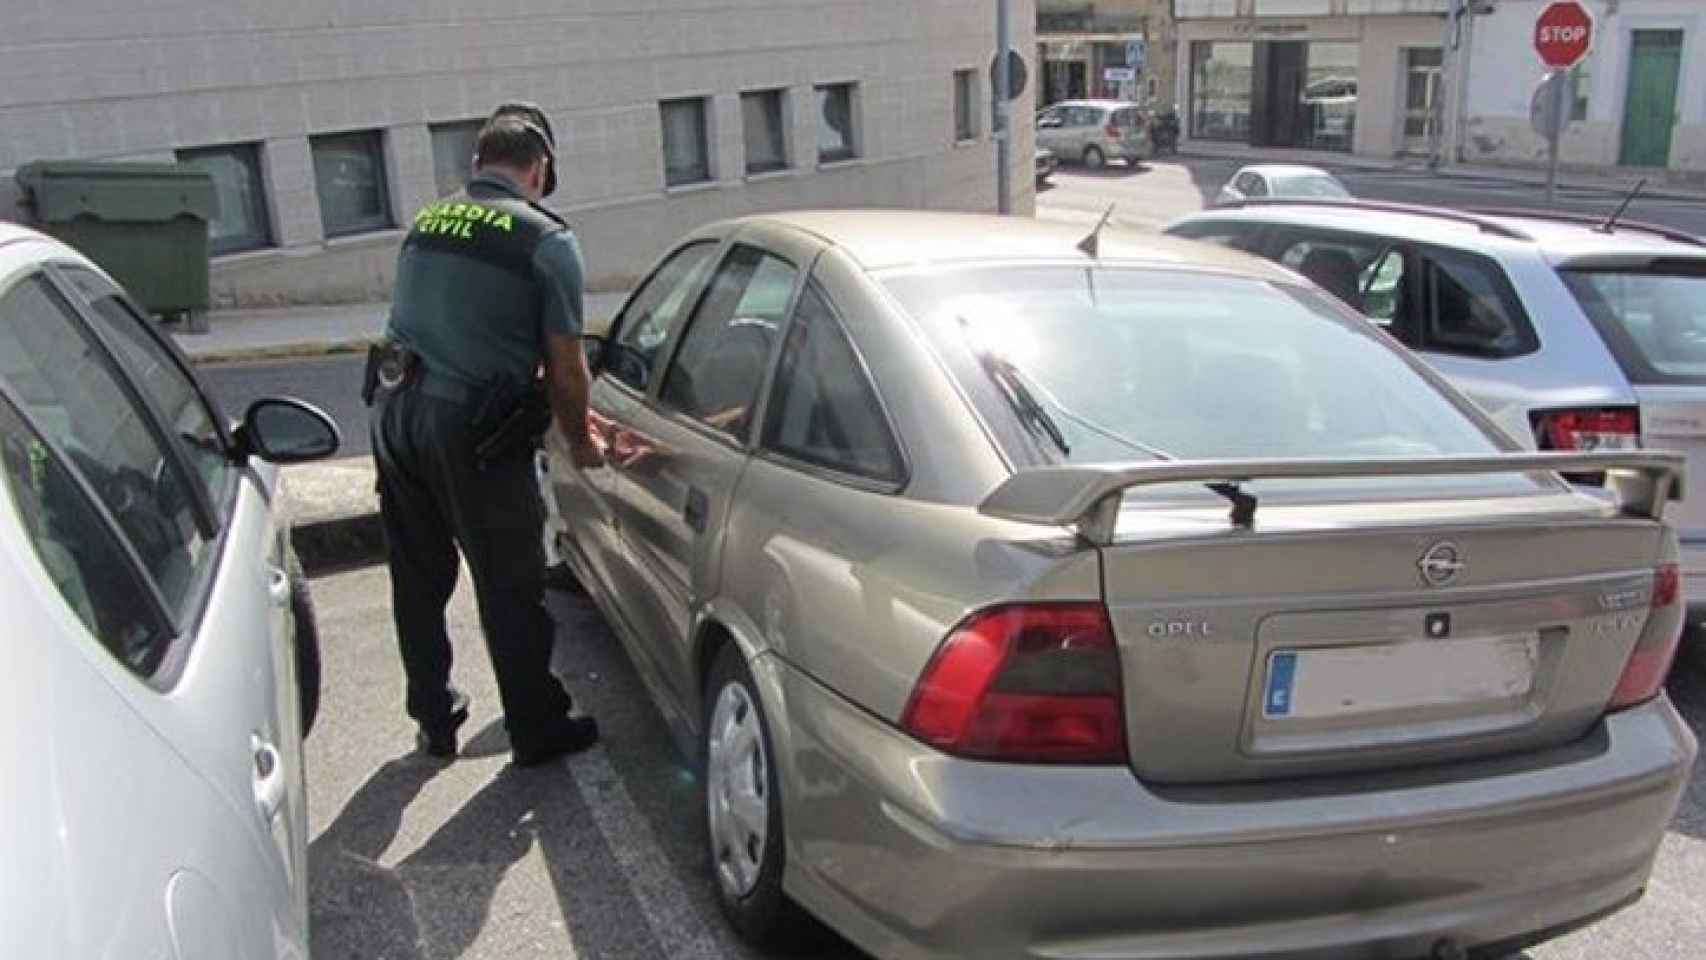 La Guardia Civil inmoviliza el coche utilizado por el anciano / CG